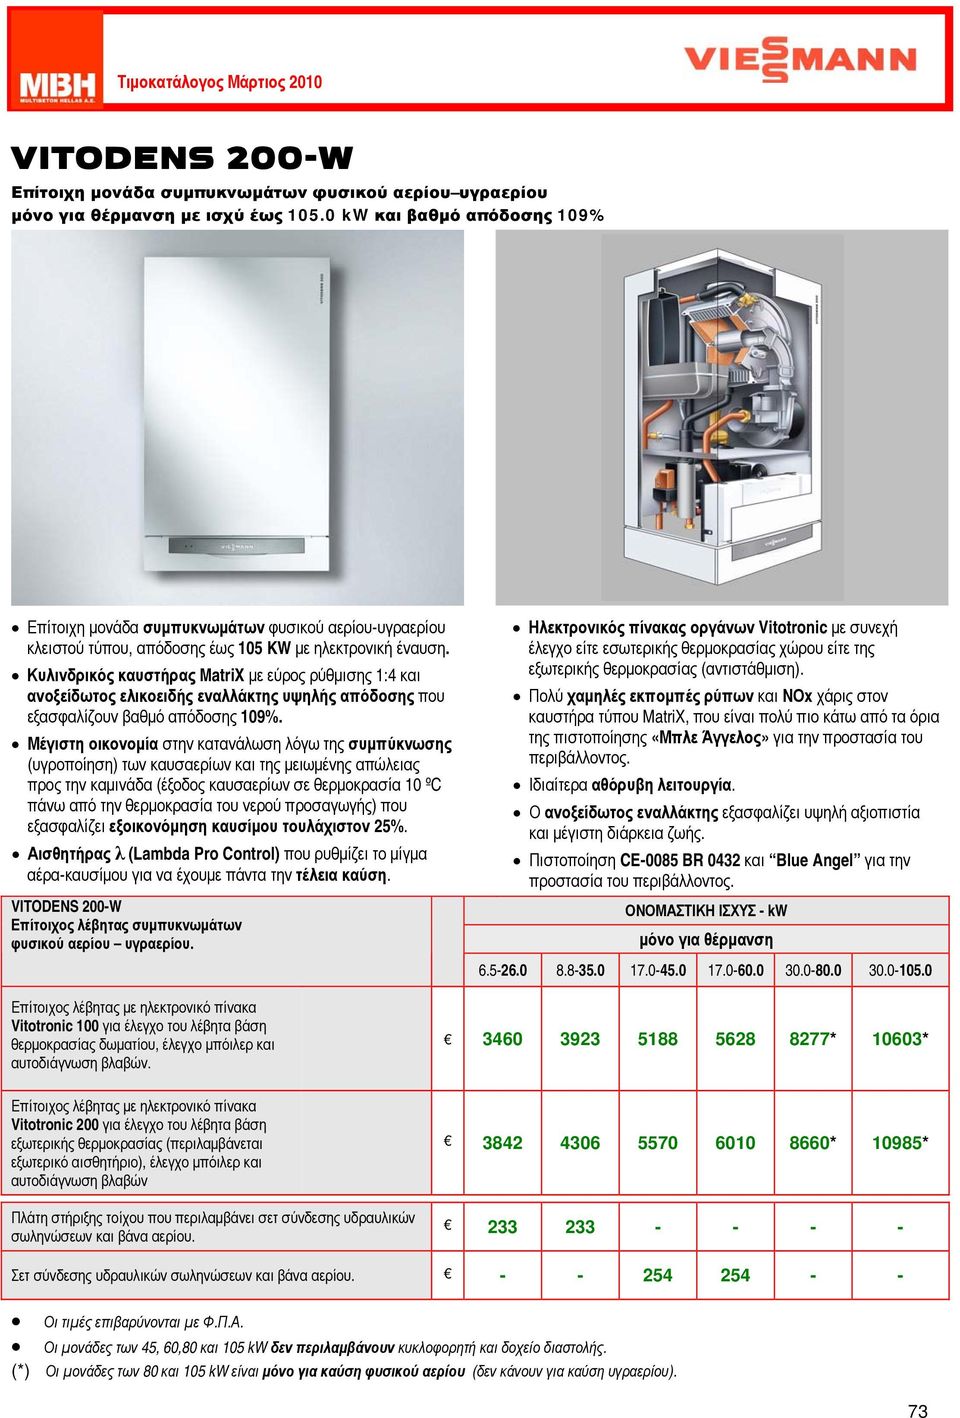 Κυλινδρικός καυστήρας MatriX με εύρος ρύθμισης 1:4 και ανοξείδωτος ελικοειδής εναλλάκτης υψηλής απόδοσης που εξασφαλίζουν βαθμό απόδοσης 109%.